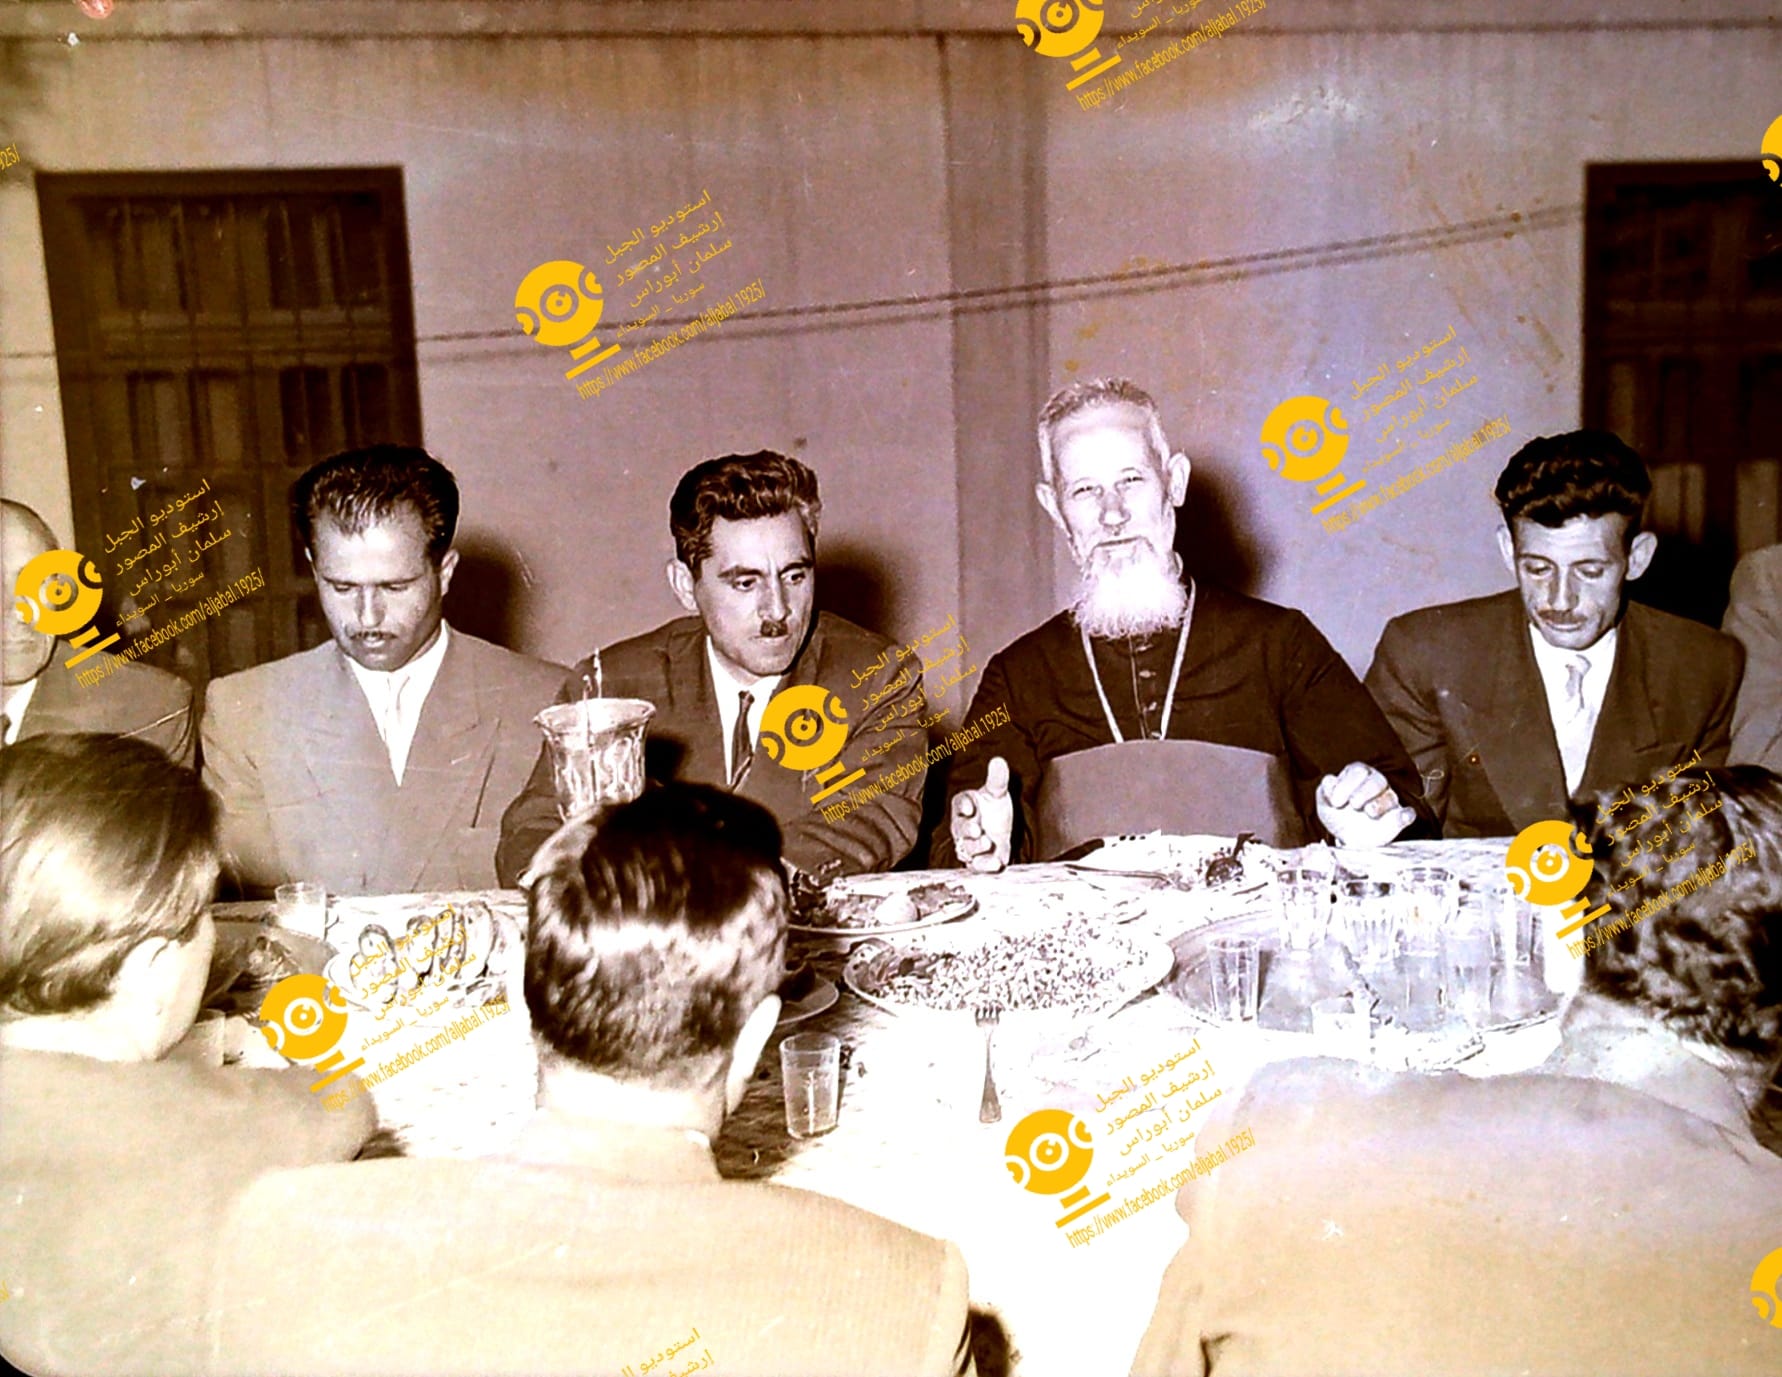 التاريخ السوري المعاصر - راعي كنيسة يسوع الملك وسلامة عبيد مدير المعارف في السويداء عام 1958م